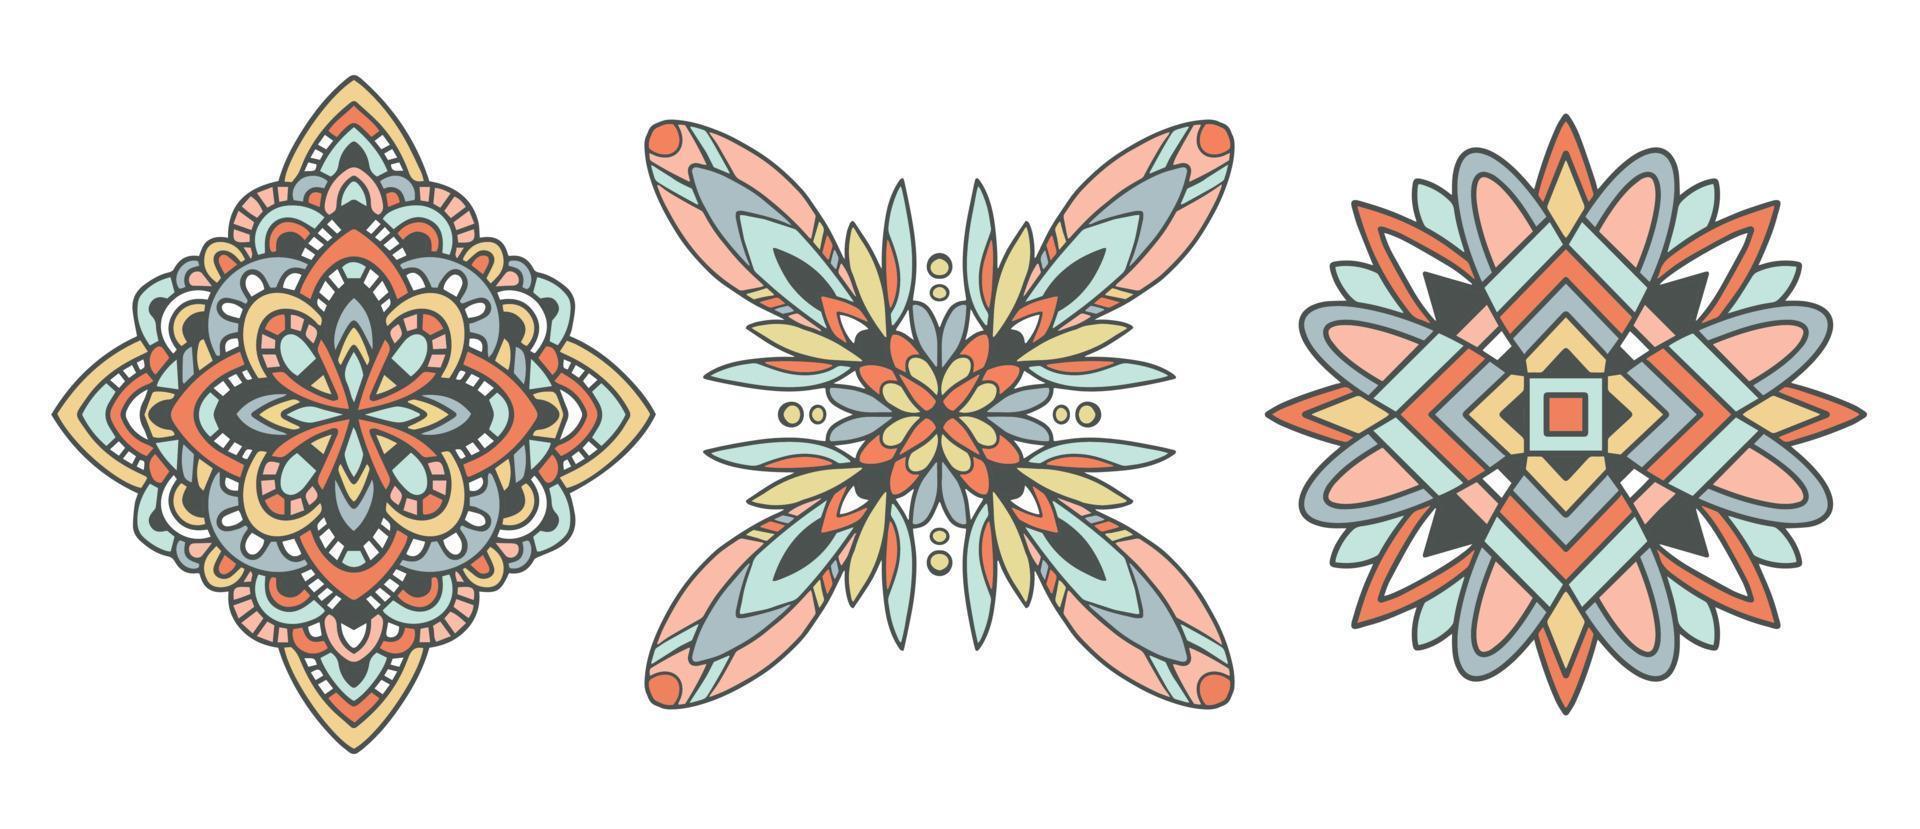 Vektor traditioneller indischer Umriss-Mandala-Satz. orient Stammeskreiszeichen illustration.lace ethnisches Gestaltungselement.